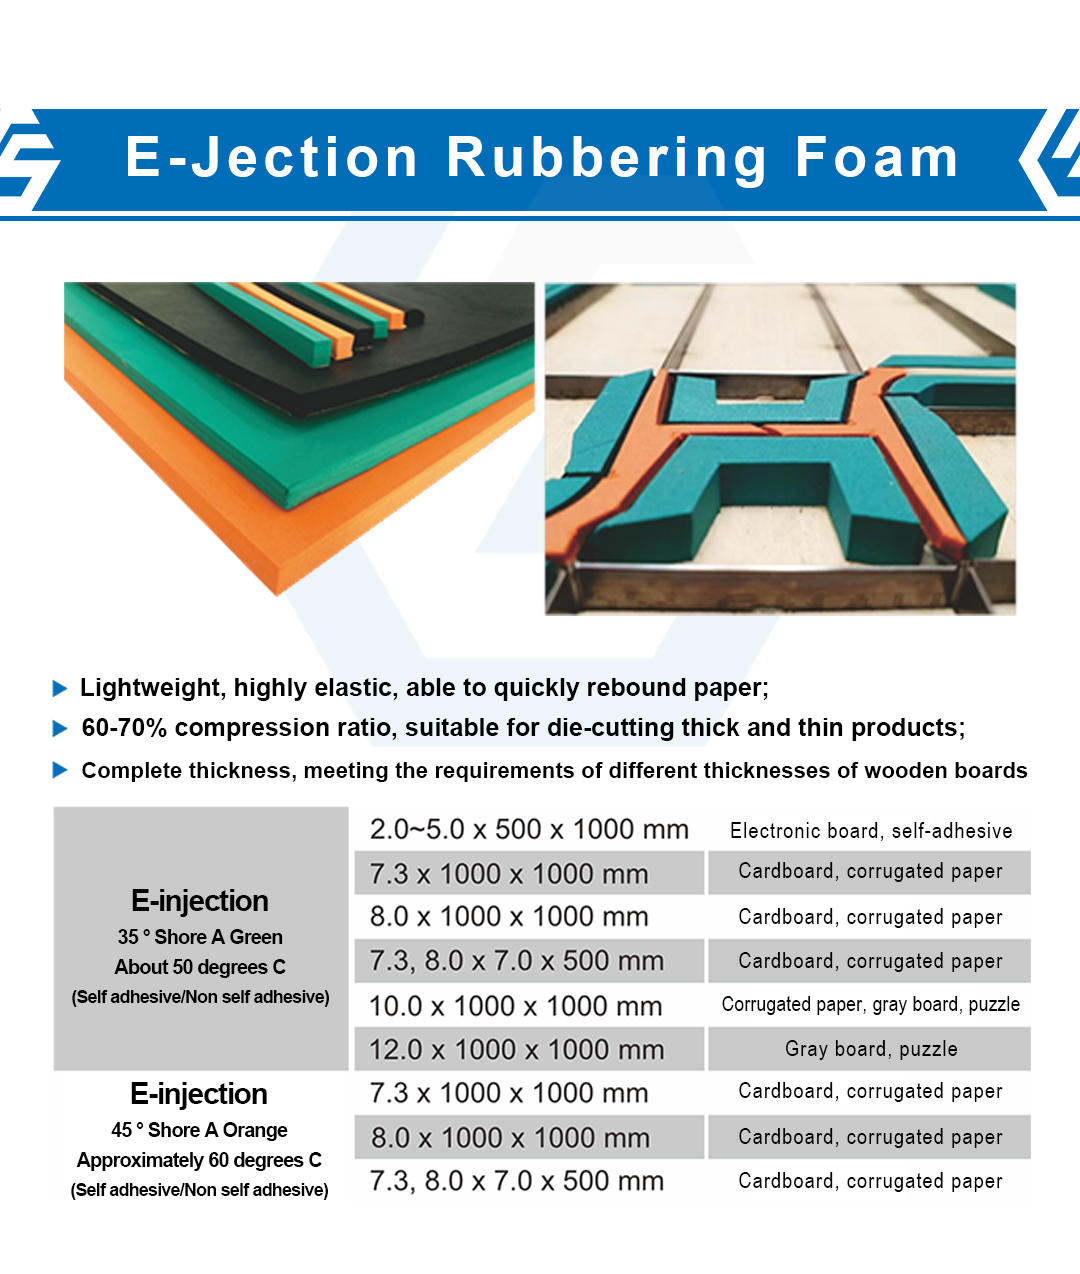 E-Jection Rubbering Foam